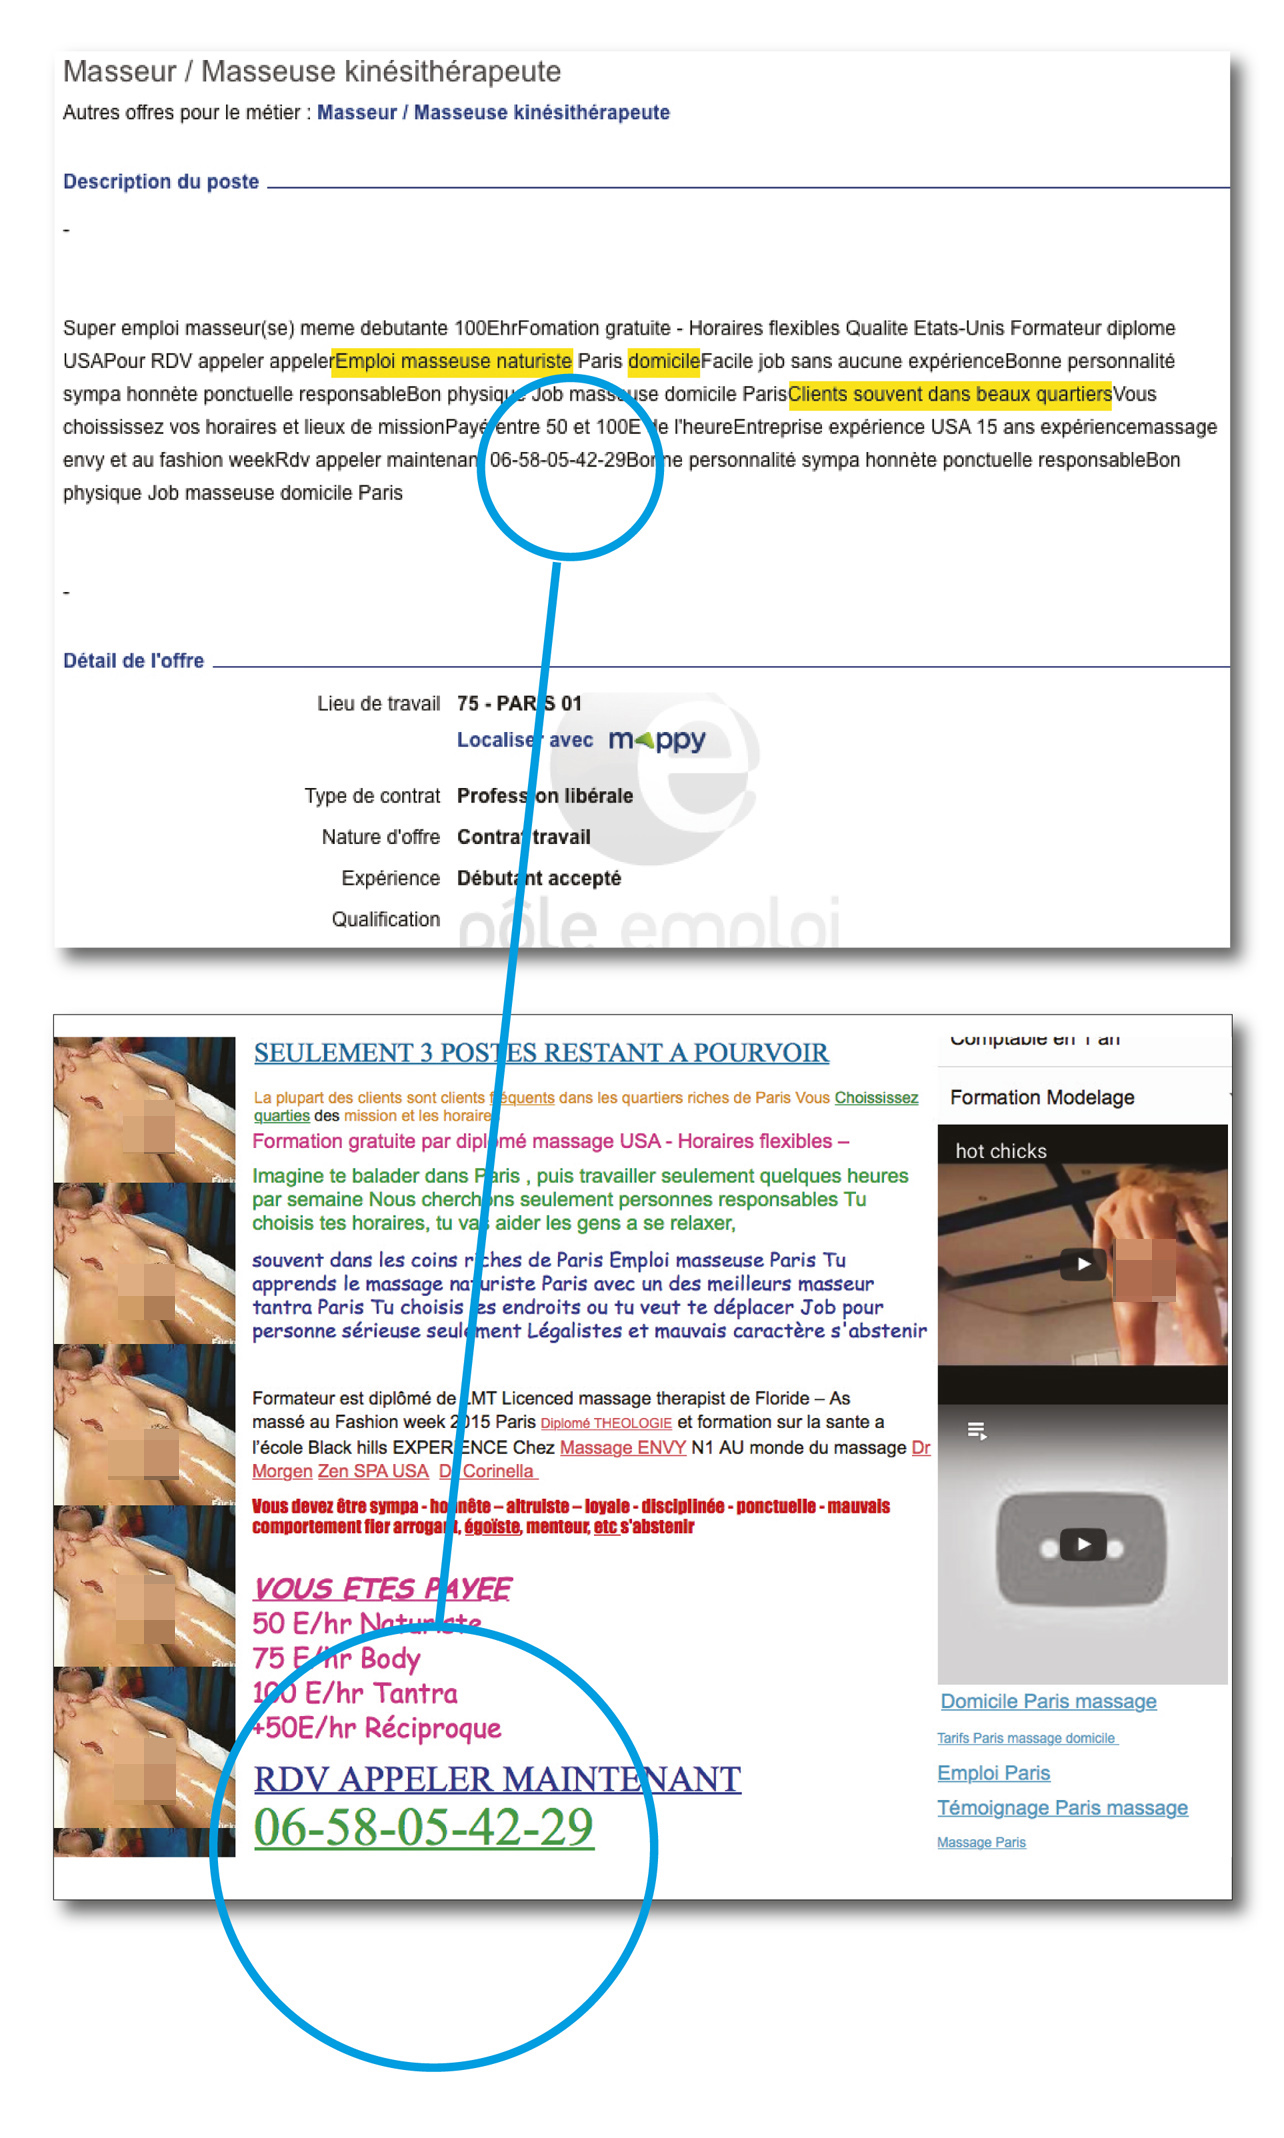 Offre d’emploi de “masseuse nudiste” relevée sur le site de Pôle Emploi + page du site de l’employeur en question